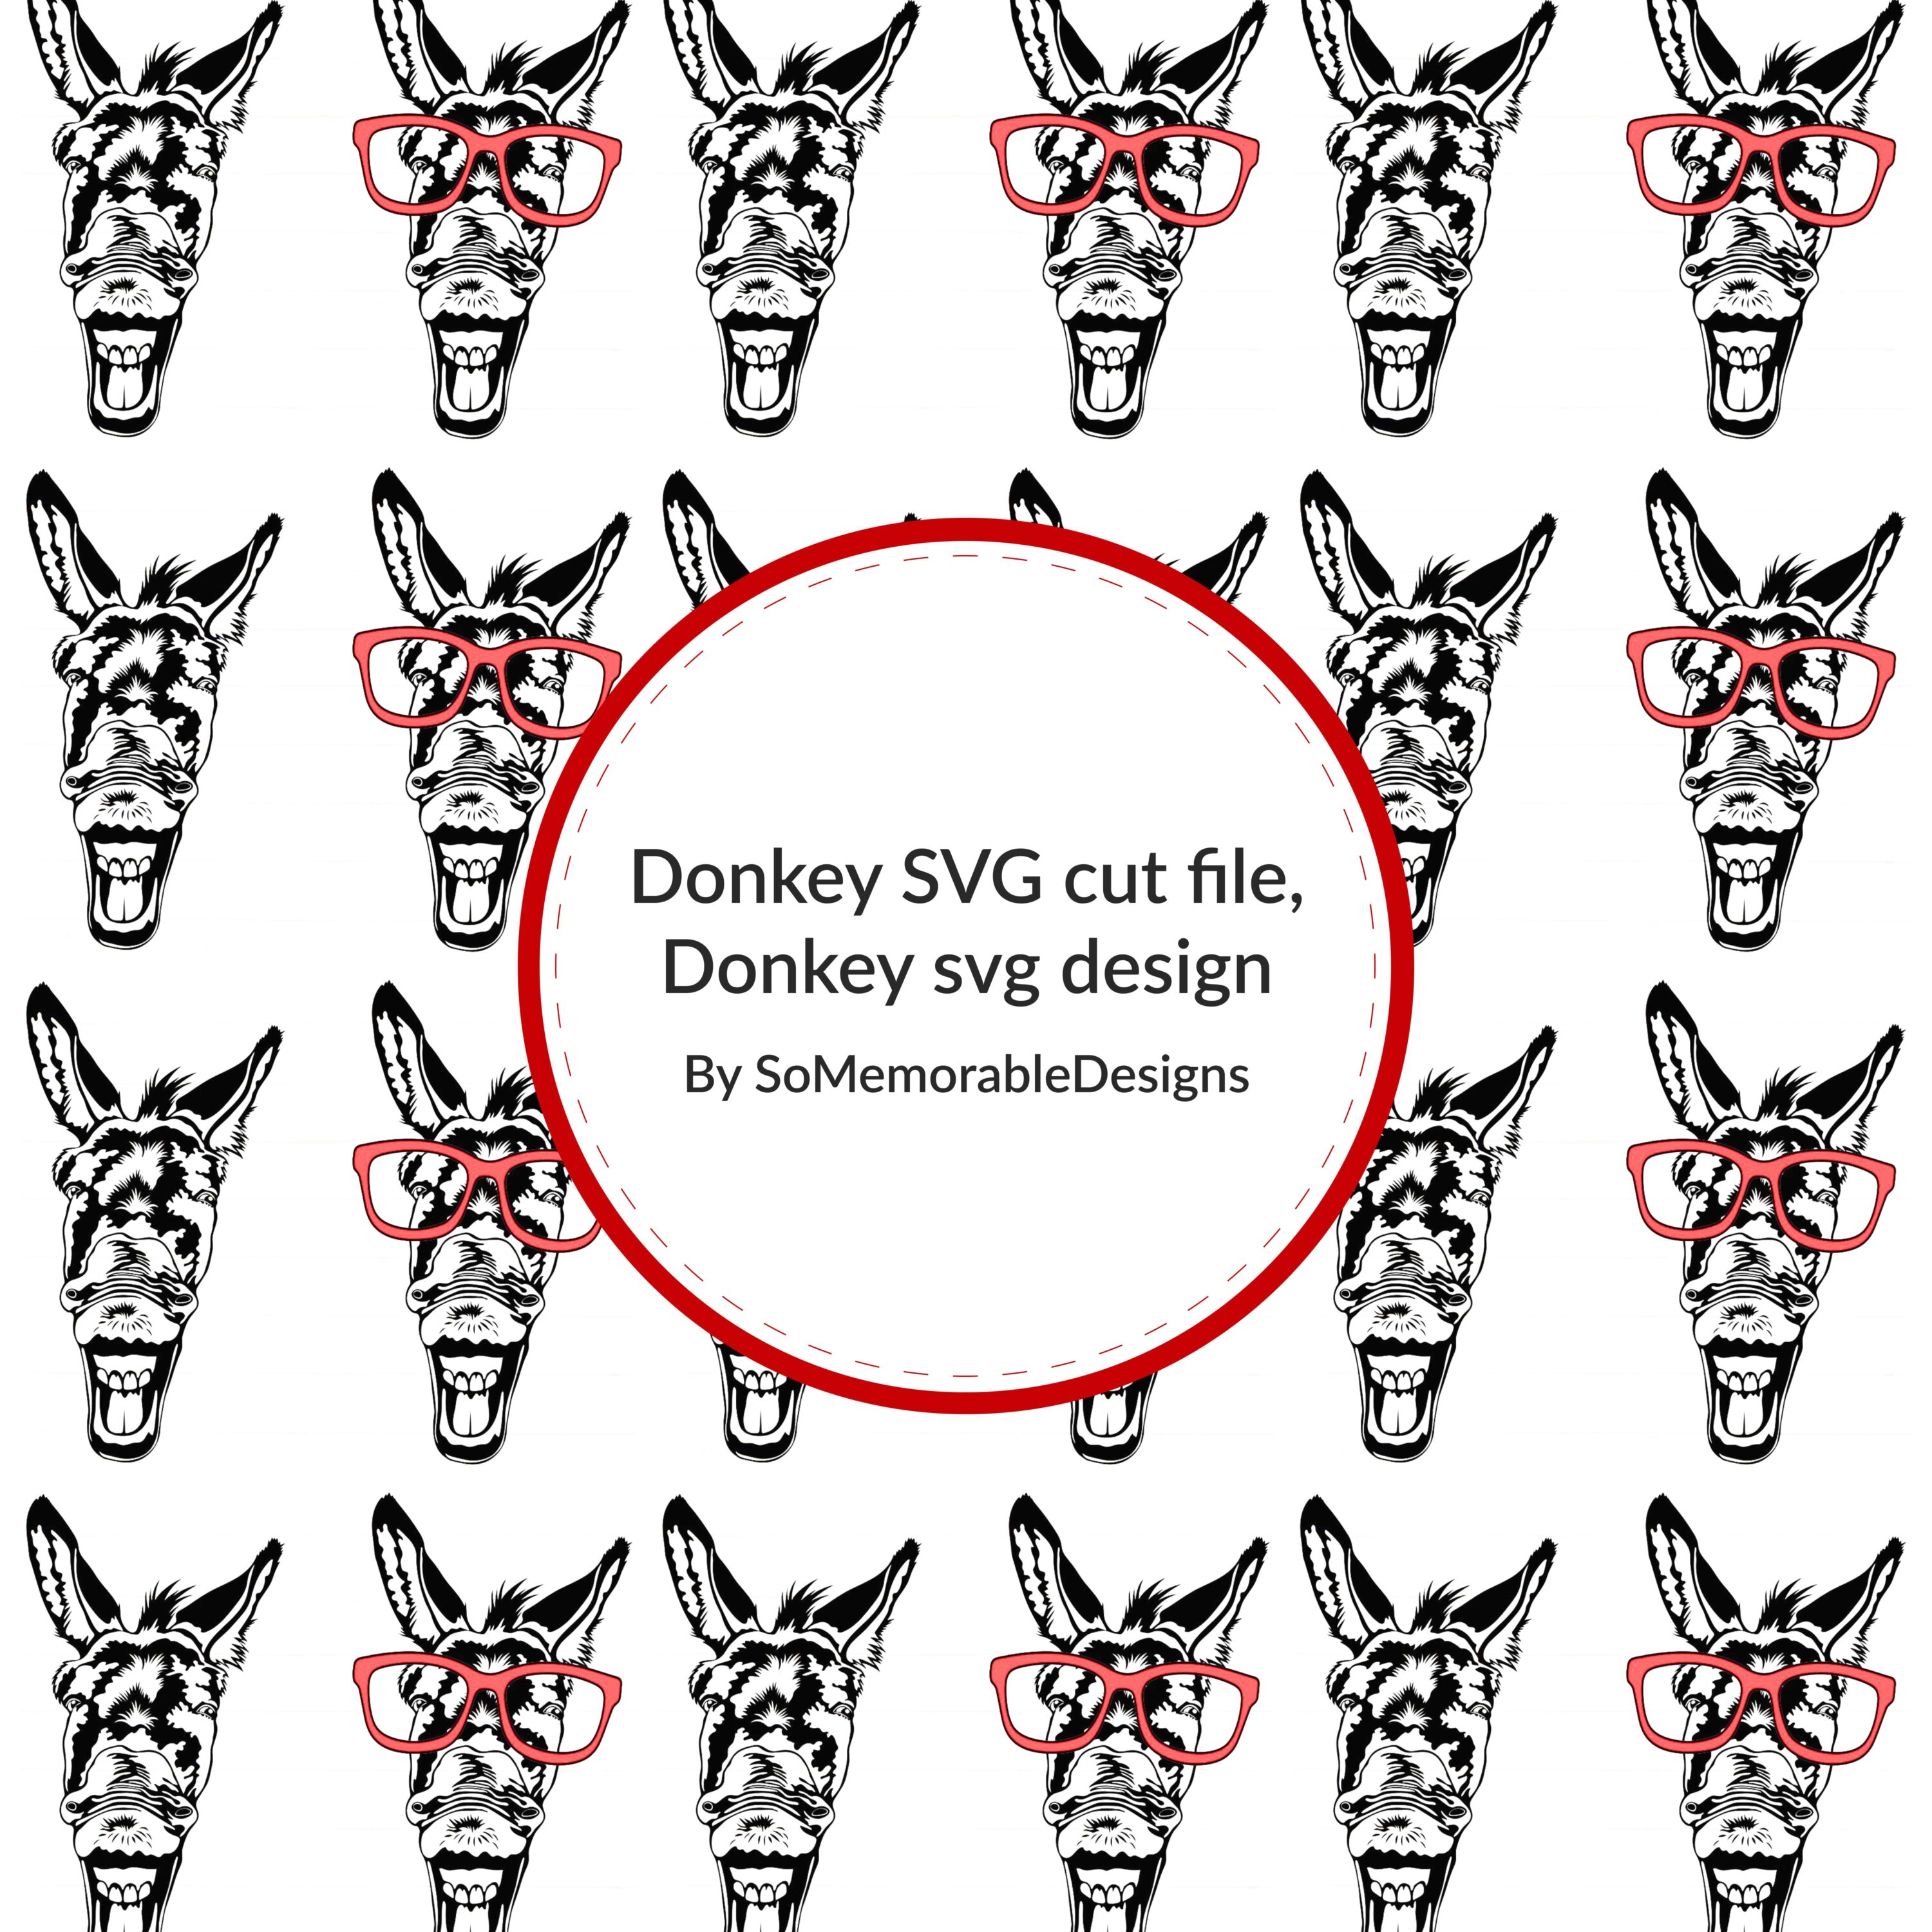 Donkey SVG cut file, Donkey svg design.